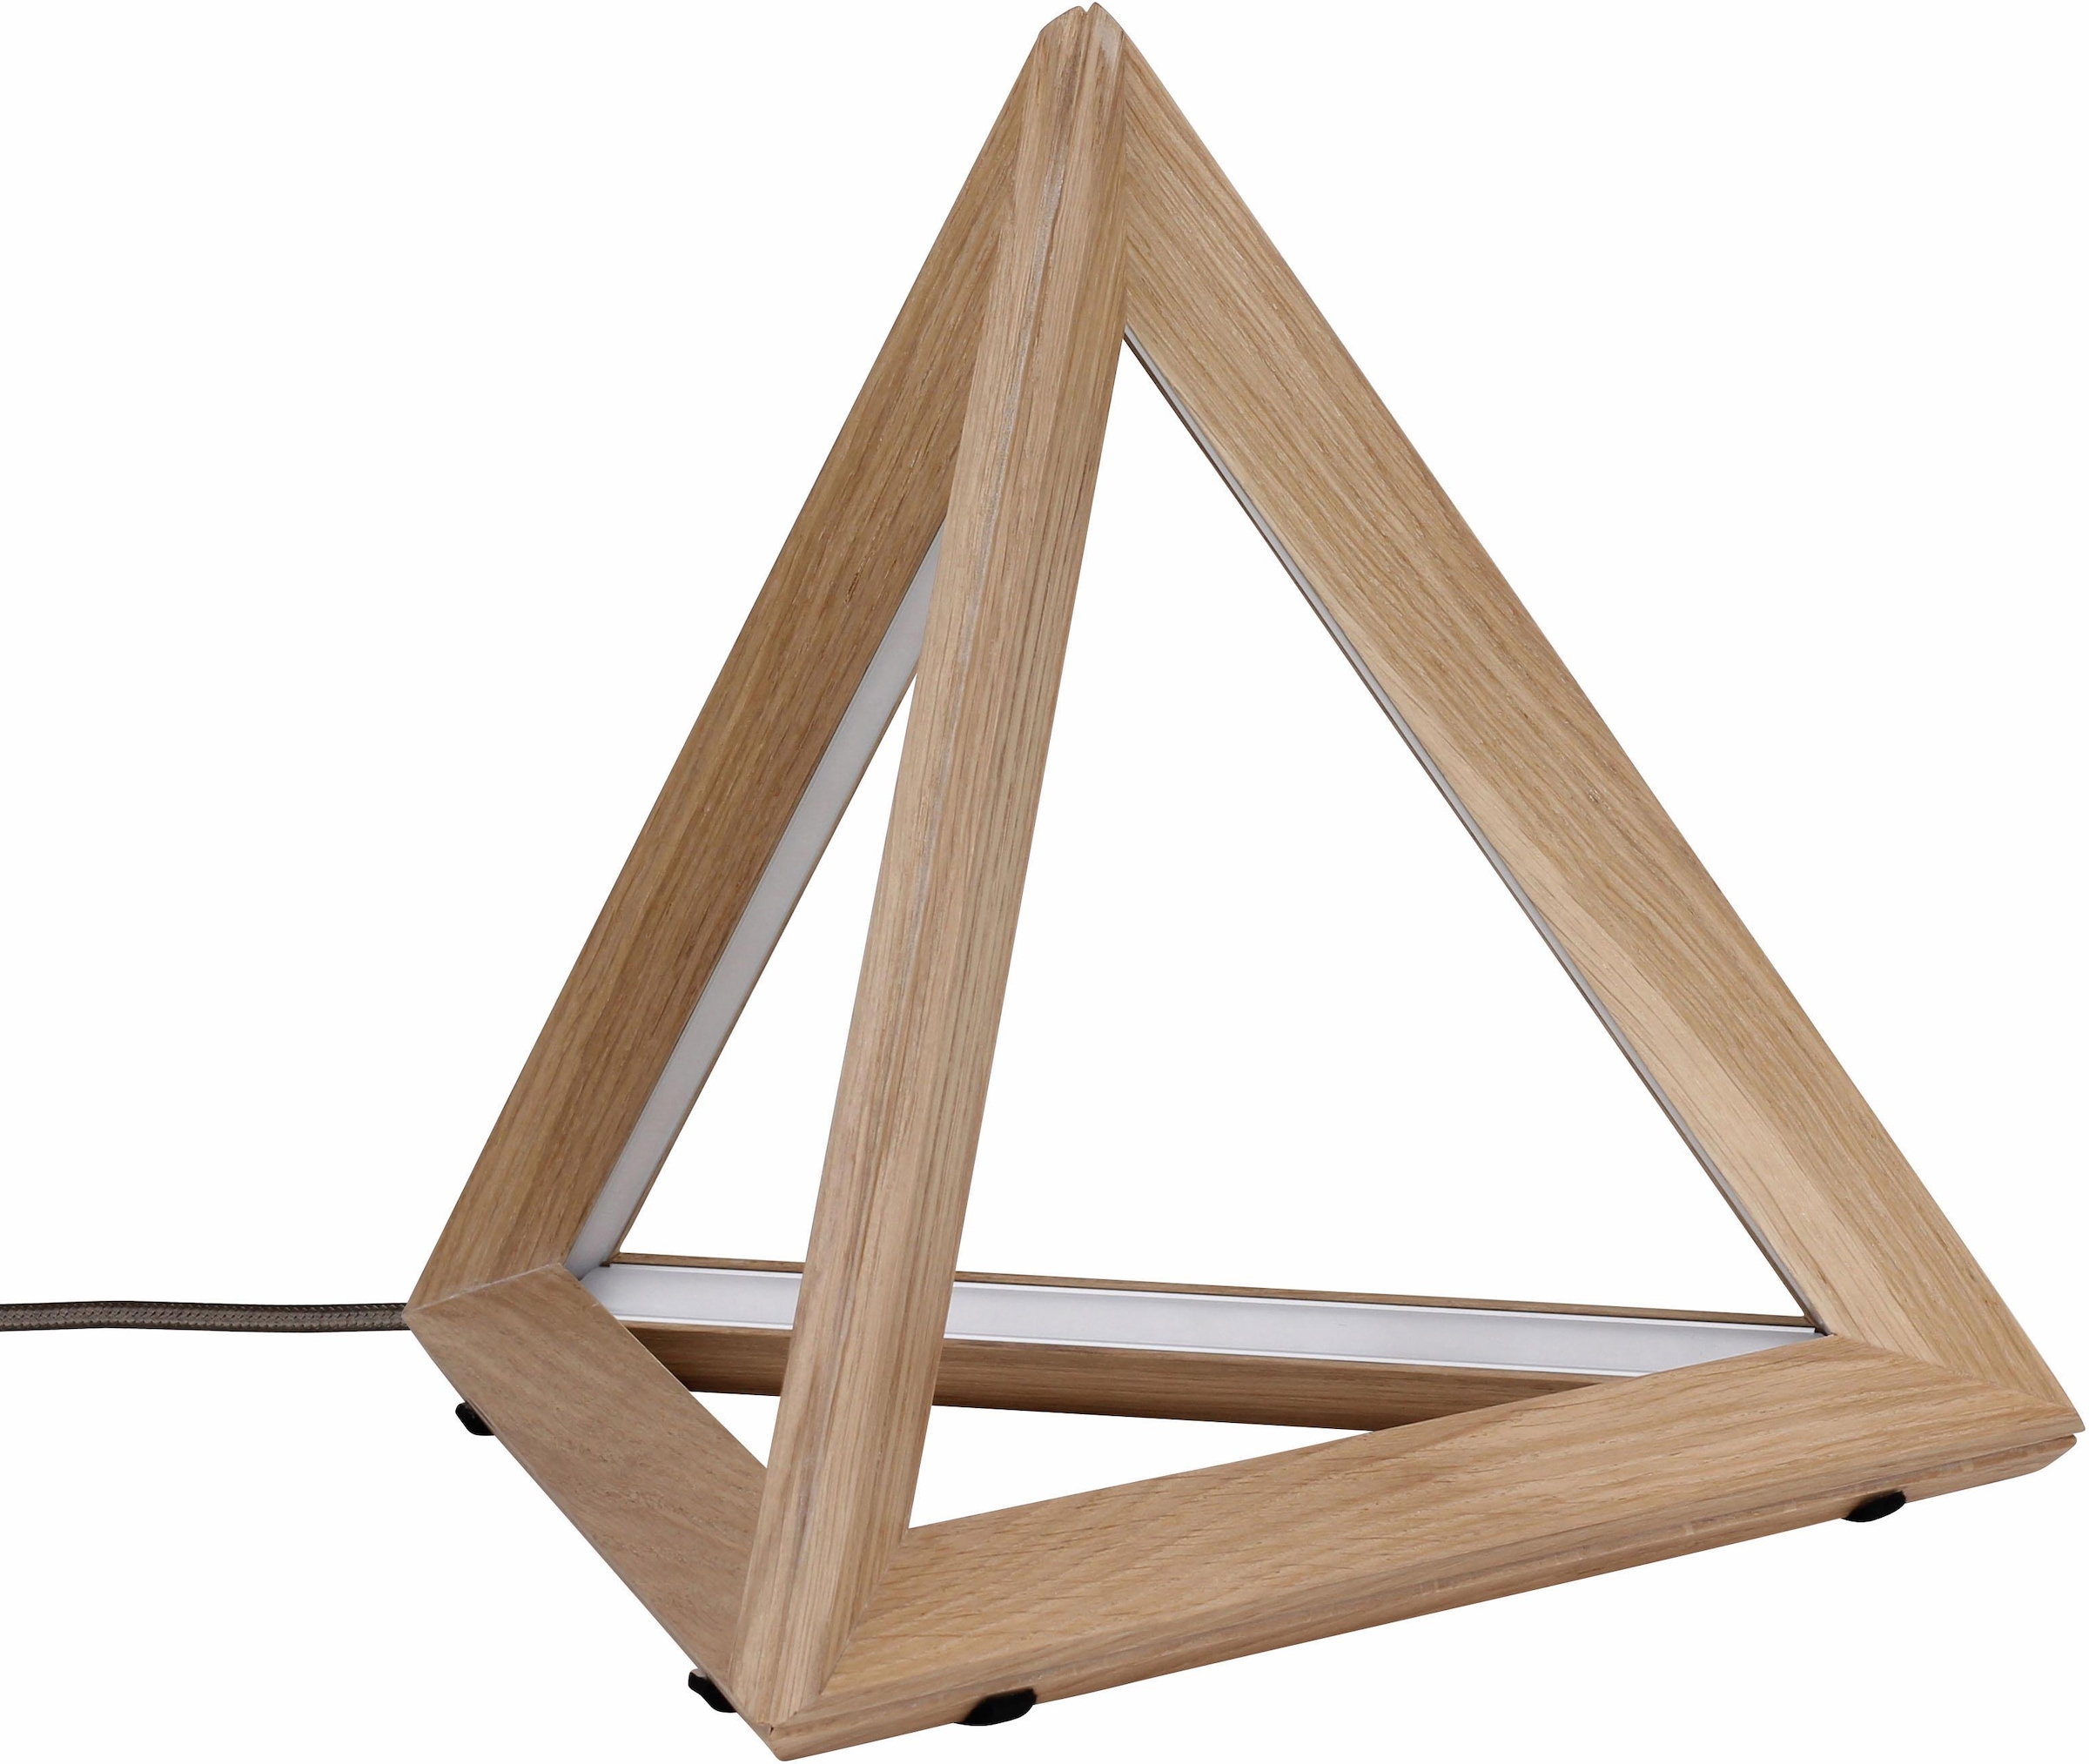 Tischleuchte aus Holz in Dreiecksform